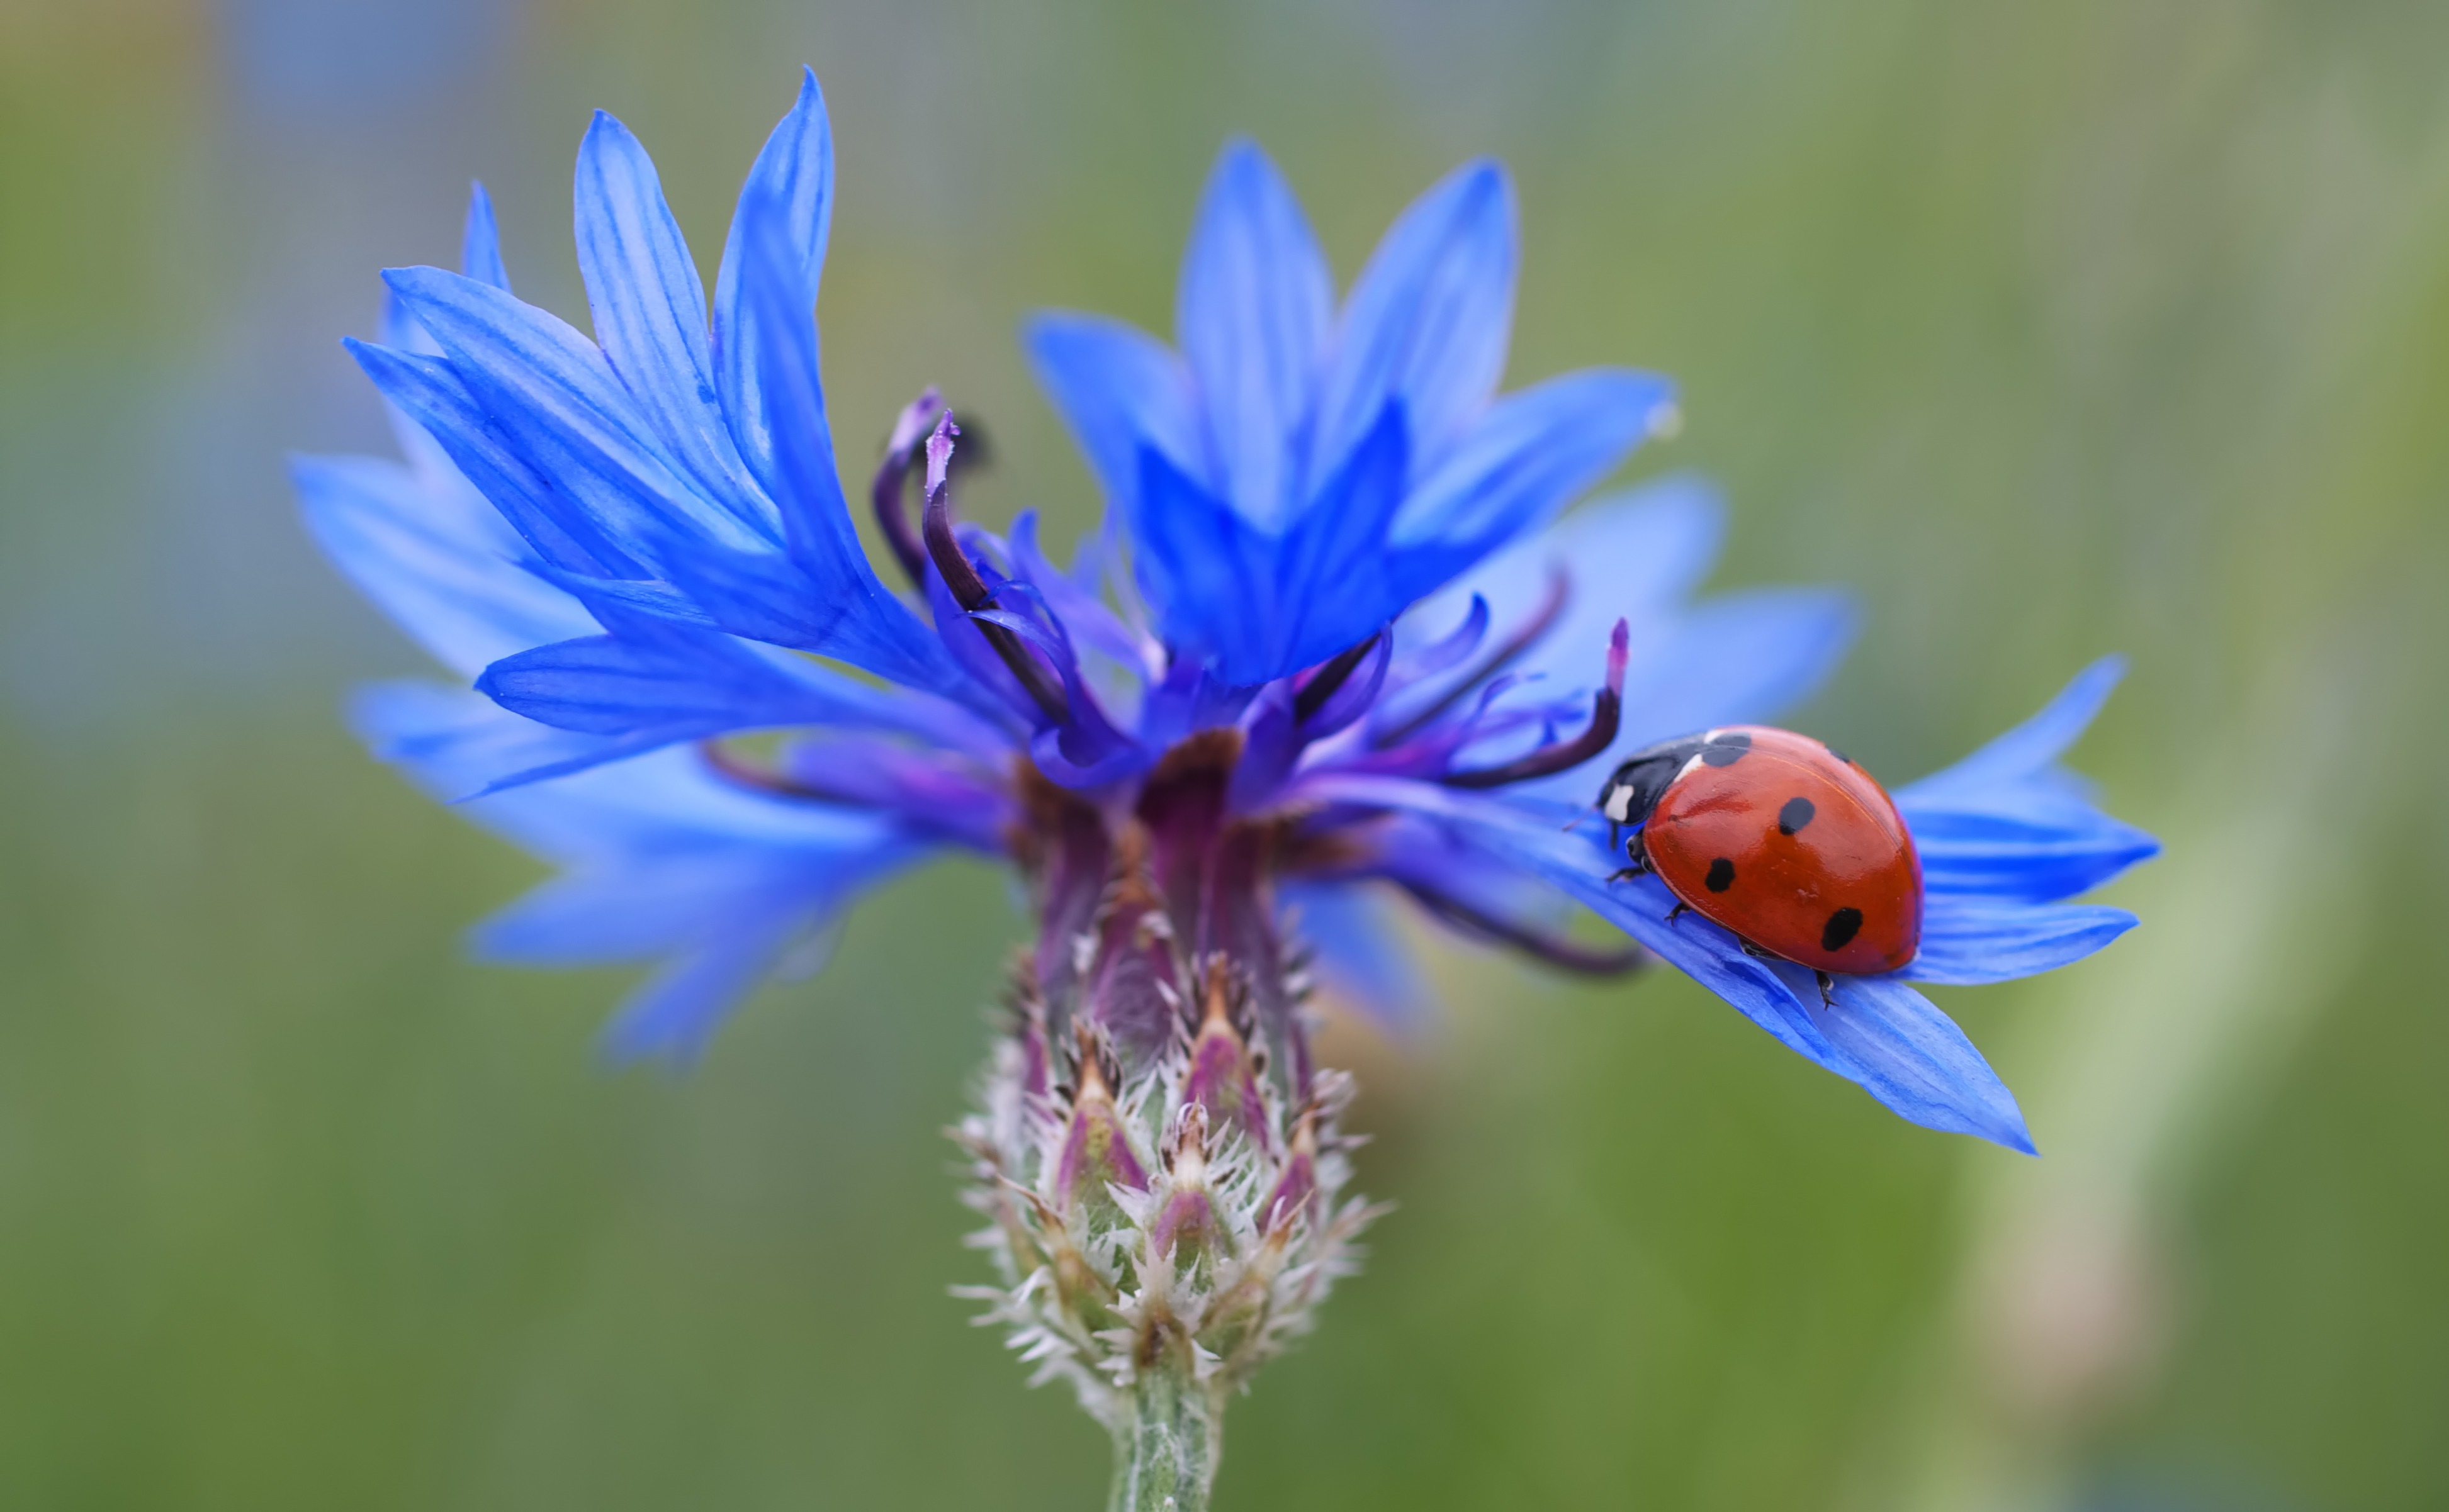 Free photo A ladybug on a blue flower